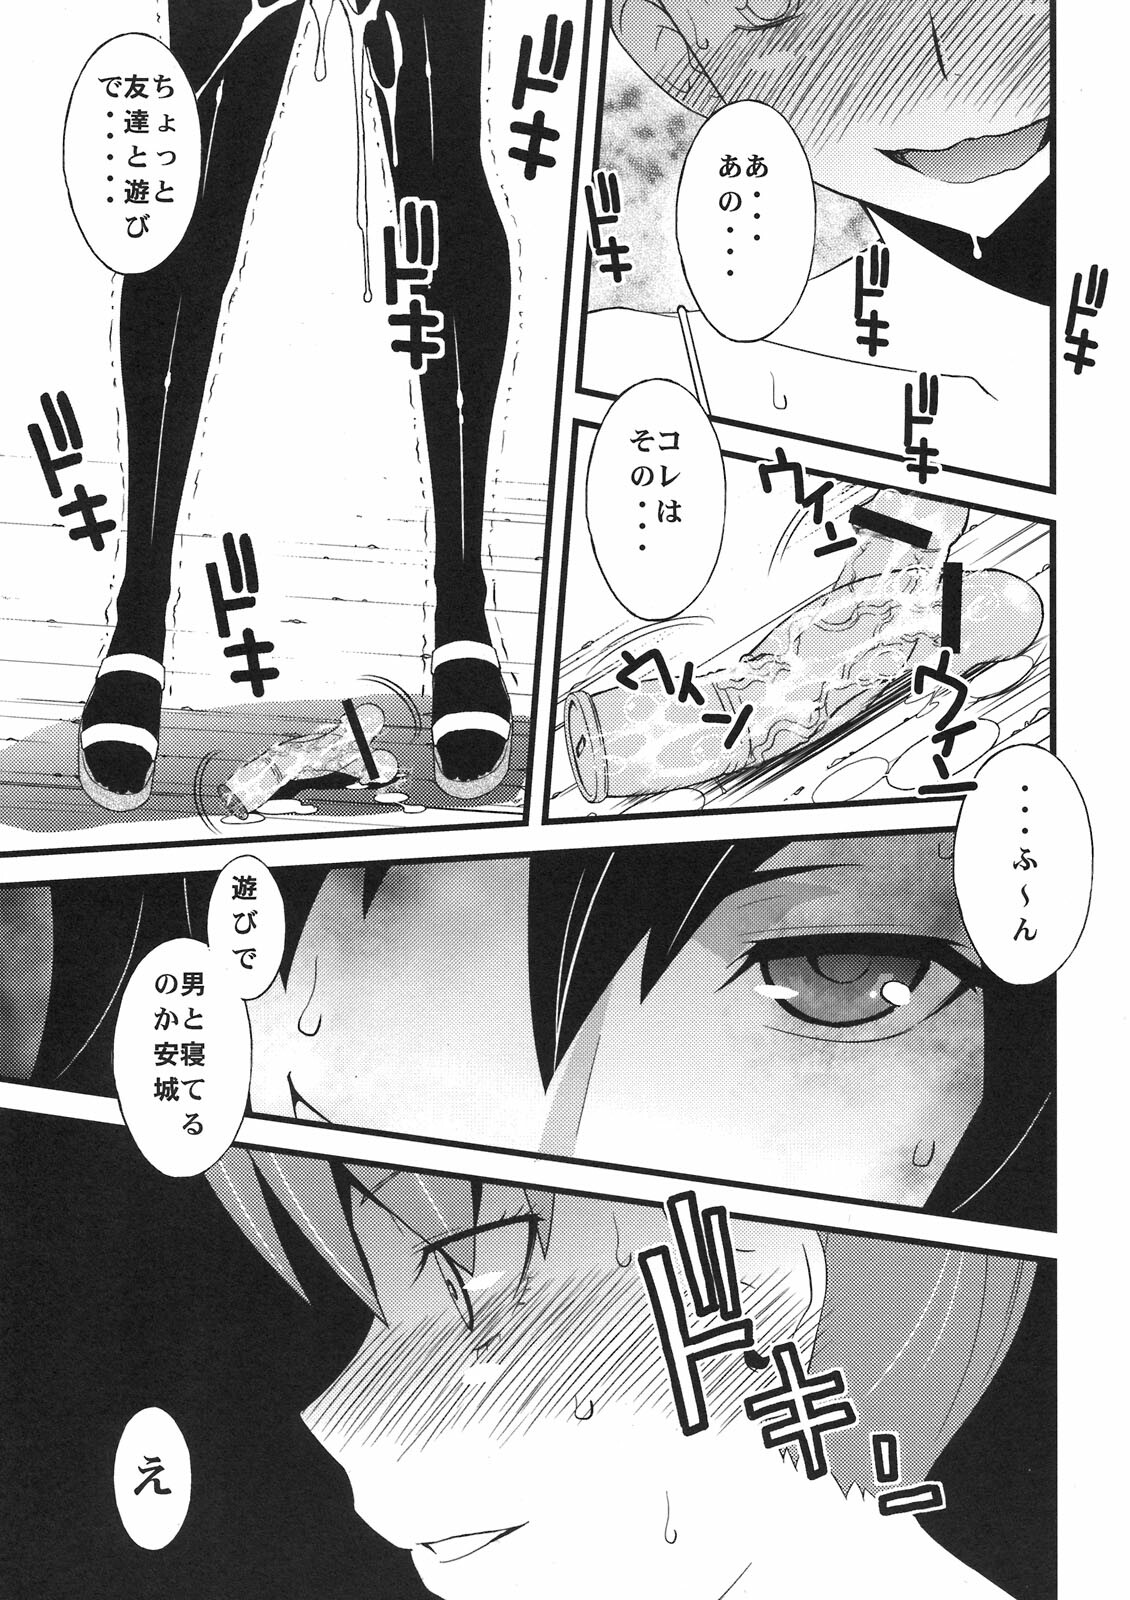 (SC52) [Sanazura Doujinshi Hakkoujo (Sanazura Hiroyuki)] Anal Sex 2 (Ano Hi Mita Hana no Namae wo Bokutachi wa Mada Shiranai) page 19 full